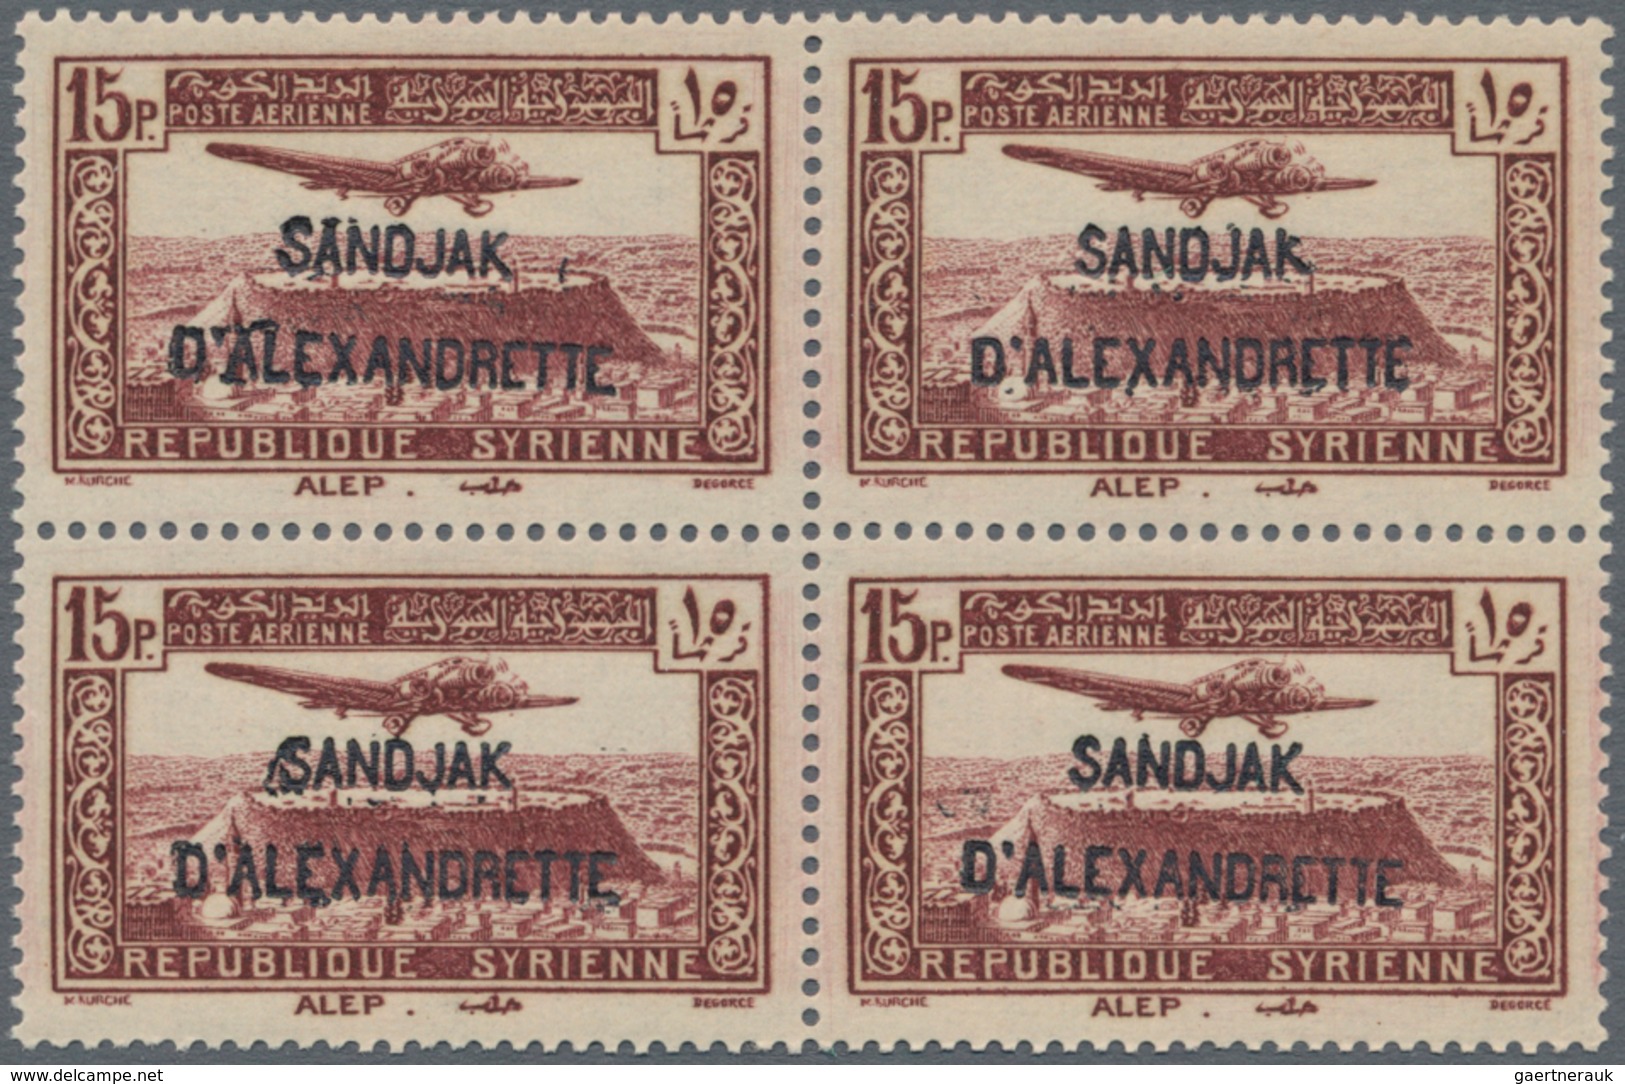 Türkei - Alexandrette: 1938, Syria Airmail Issue With Red Or Black Opt. ‚SANDJAK / D’ALEXANDRETTE‘ C - Ungebraucht